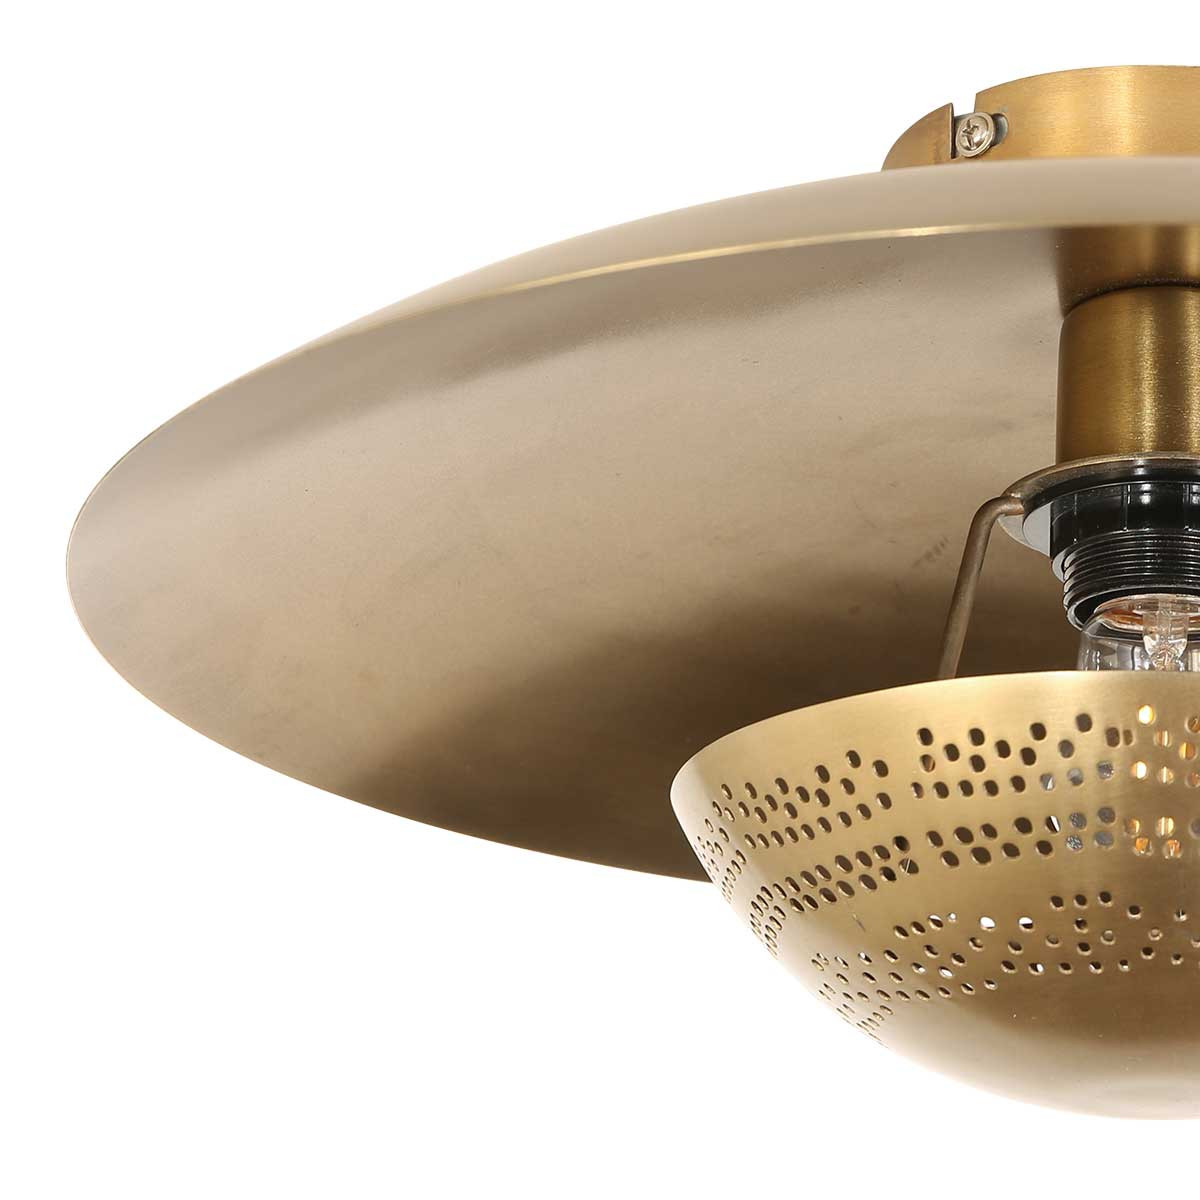 Vintage Deckenlampe rund in Gold Anne Light & Home Brass bronze